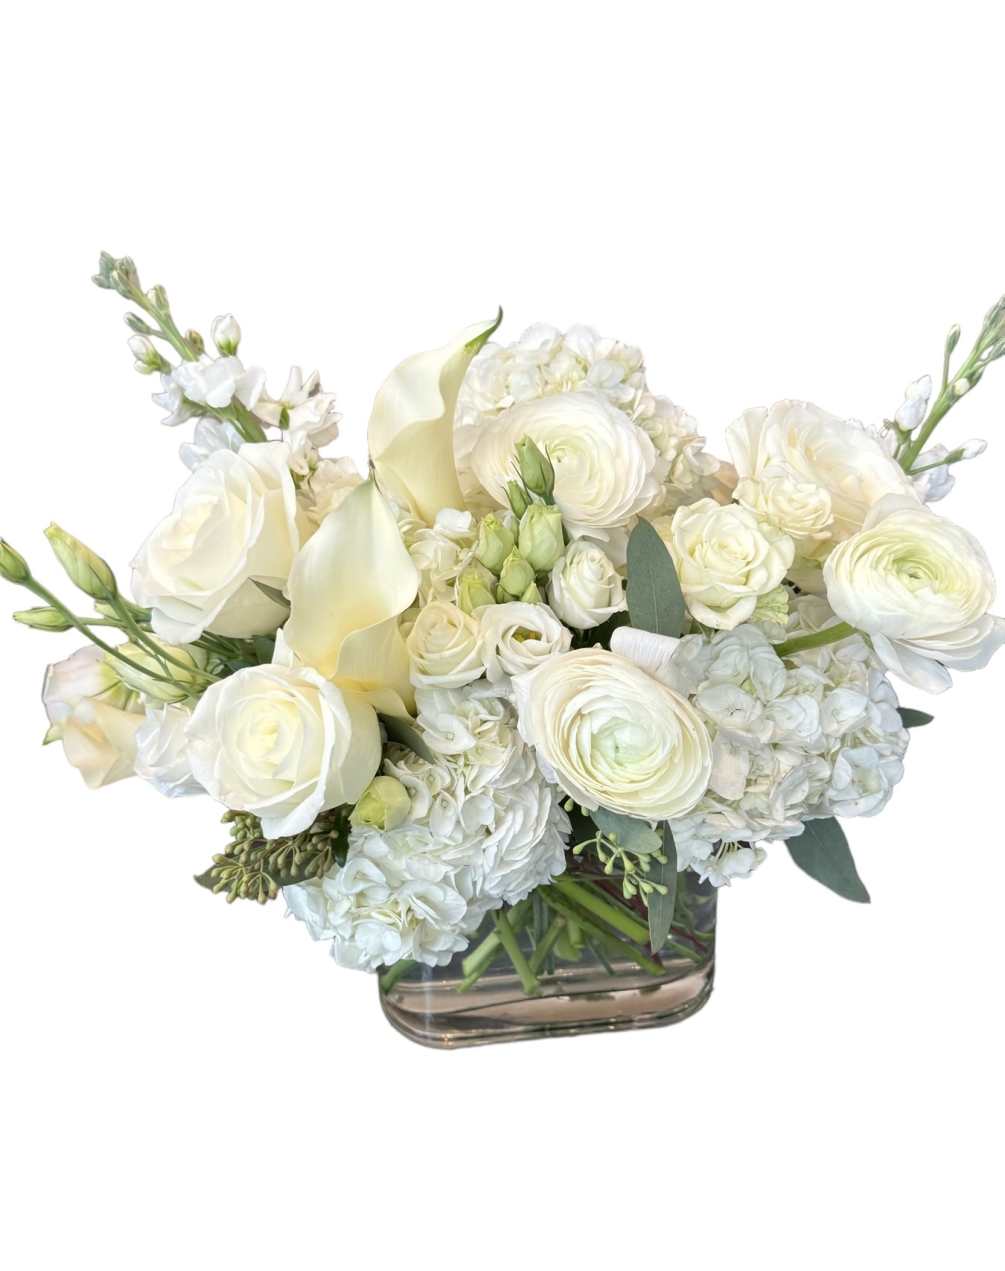 White ranunculus, white calla lily, white hydrangea, white rose, white spray rose